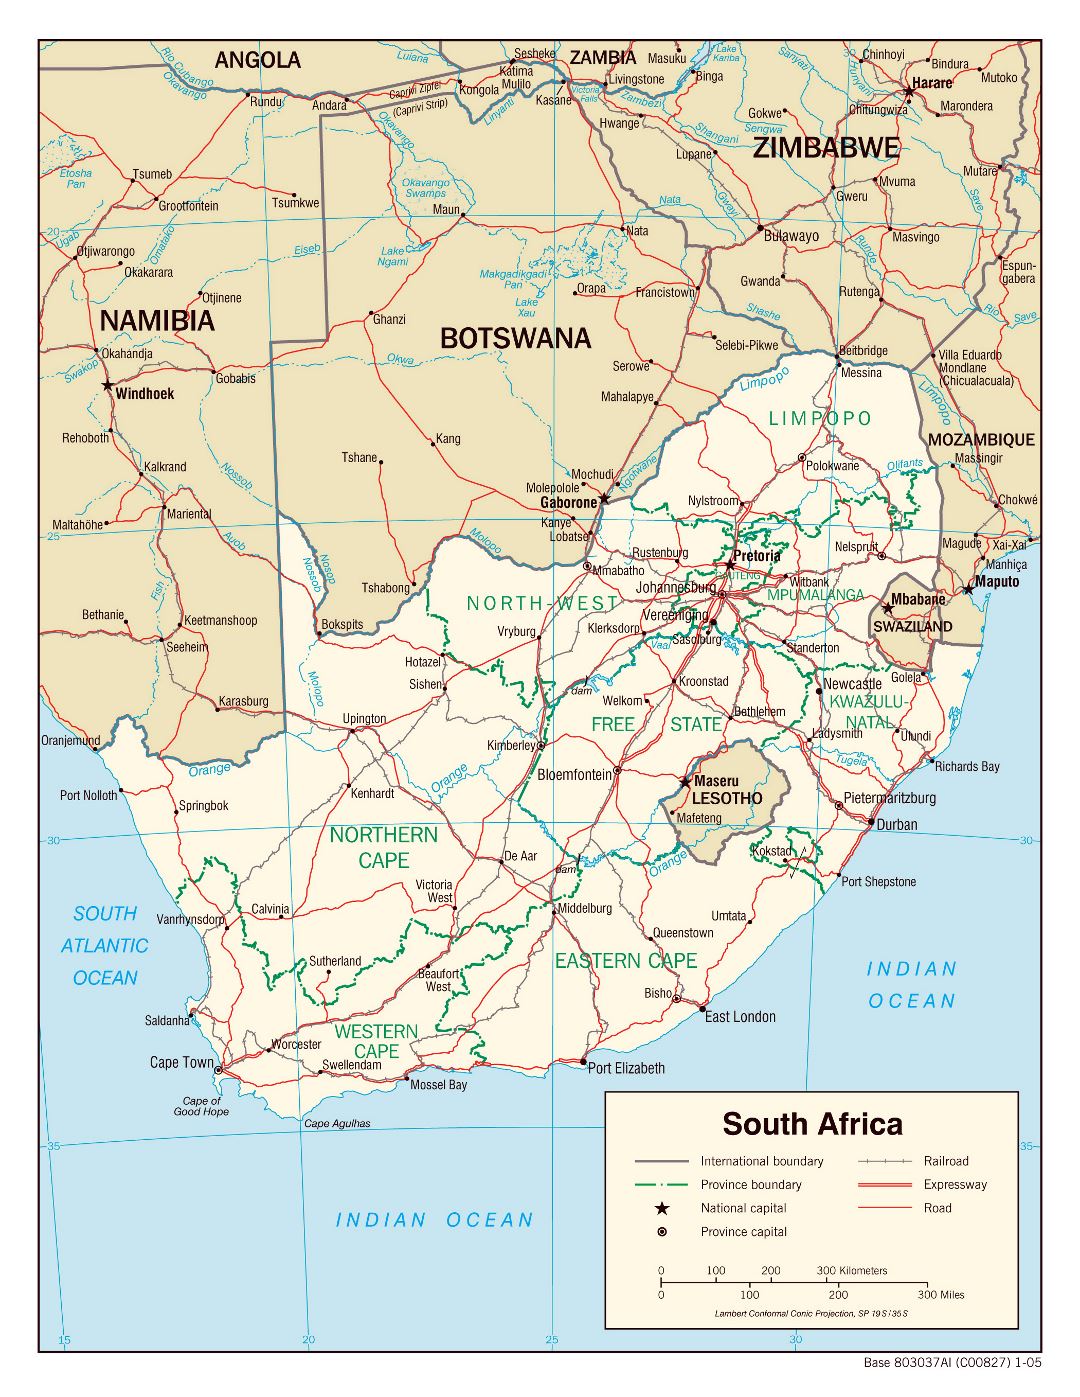 Большая политическая и административная карта Южной Африки с дорогами, железными дорогами и крупными городами - 2005